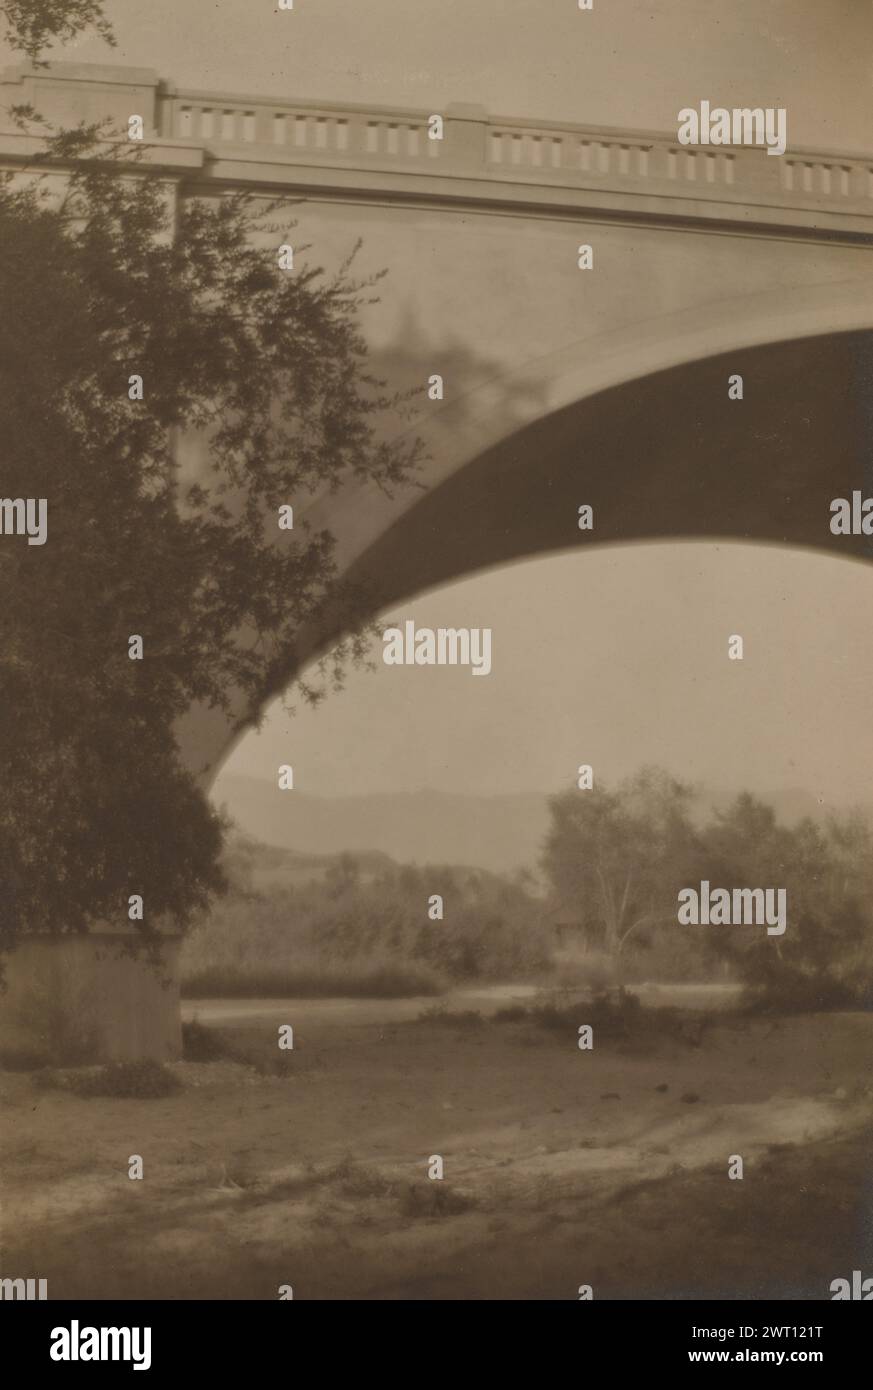 Arroyo. Taizo Kato, photographe (japonais / américain, 1887 - 1924) vers 1918 le pont supérieur du boulevard York sur la rivière Arroyo Seco, vu d'en bas. Le pont en béton a été construit en 1912. Banque D'Images